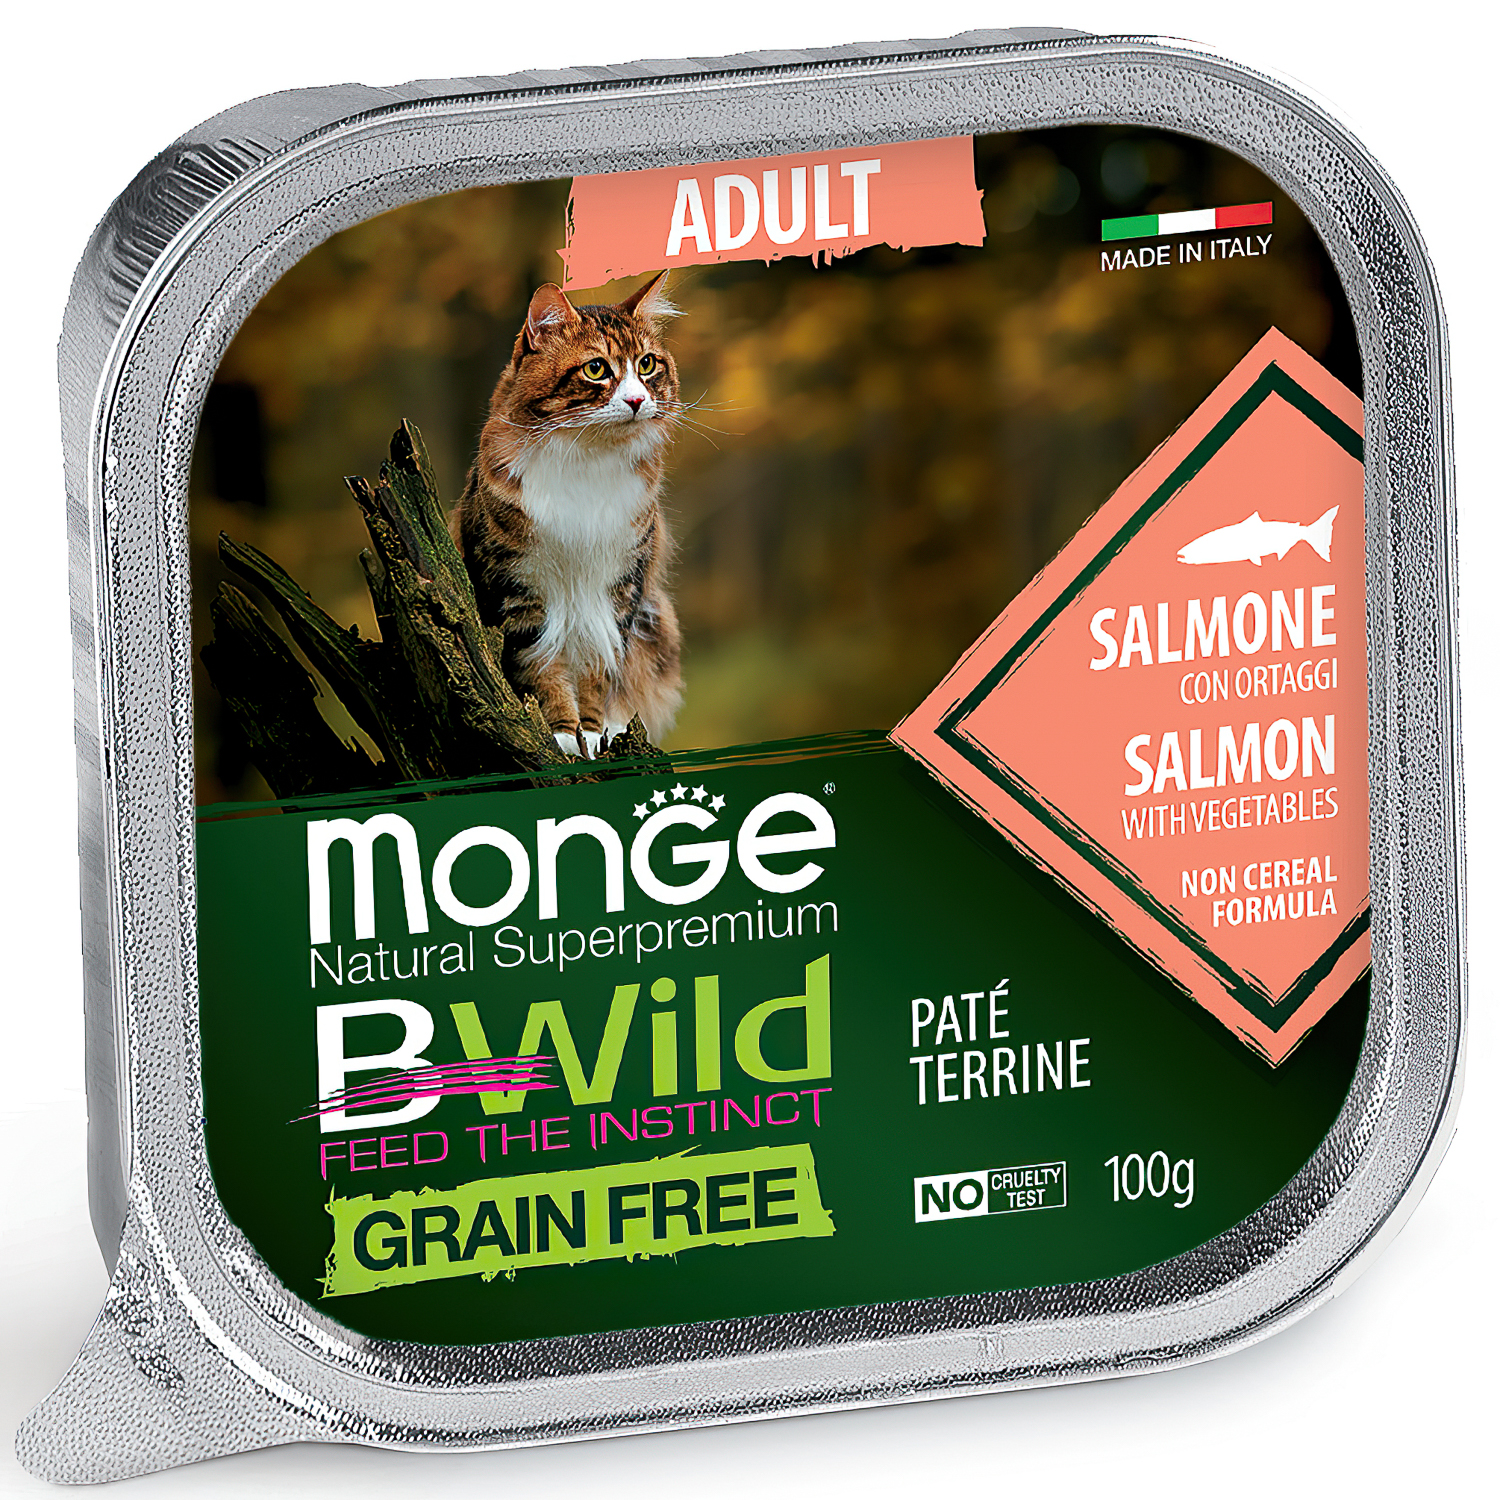 Влажный корм Monge Cat BWild GRAIN FREE для кошек, беззерновой, из лосося с овощами, консервы 100 г